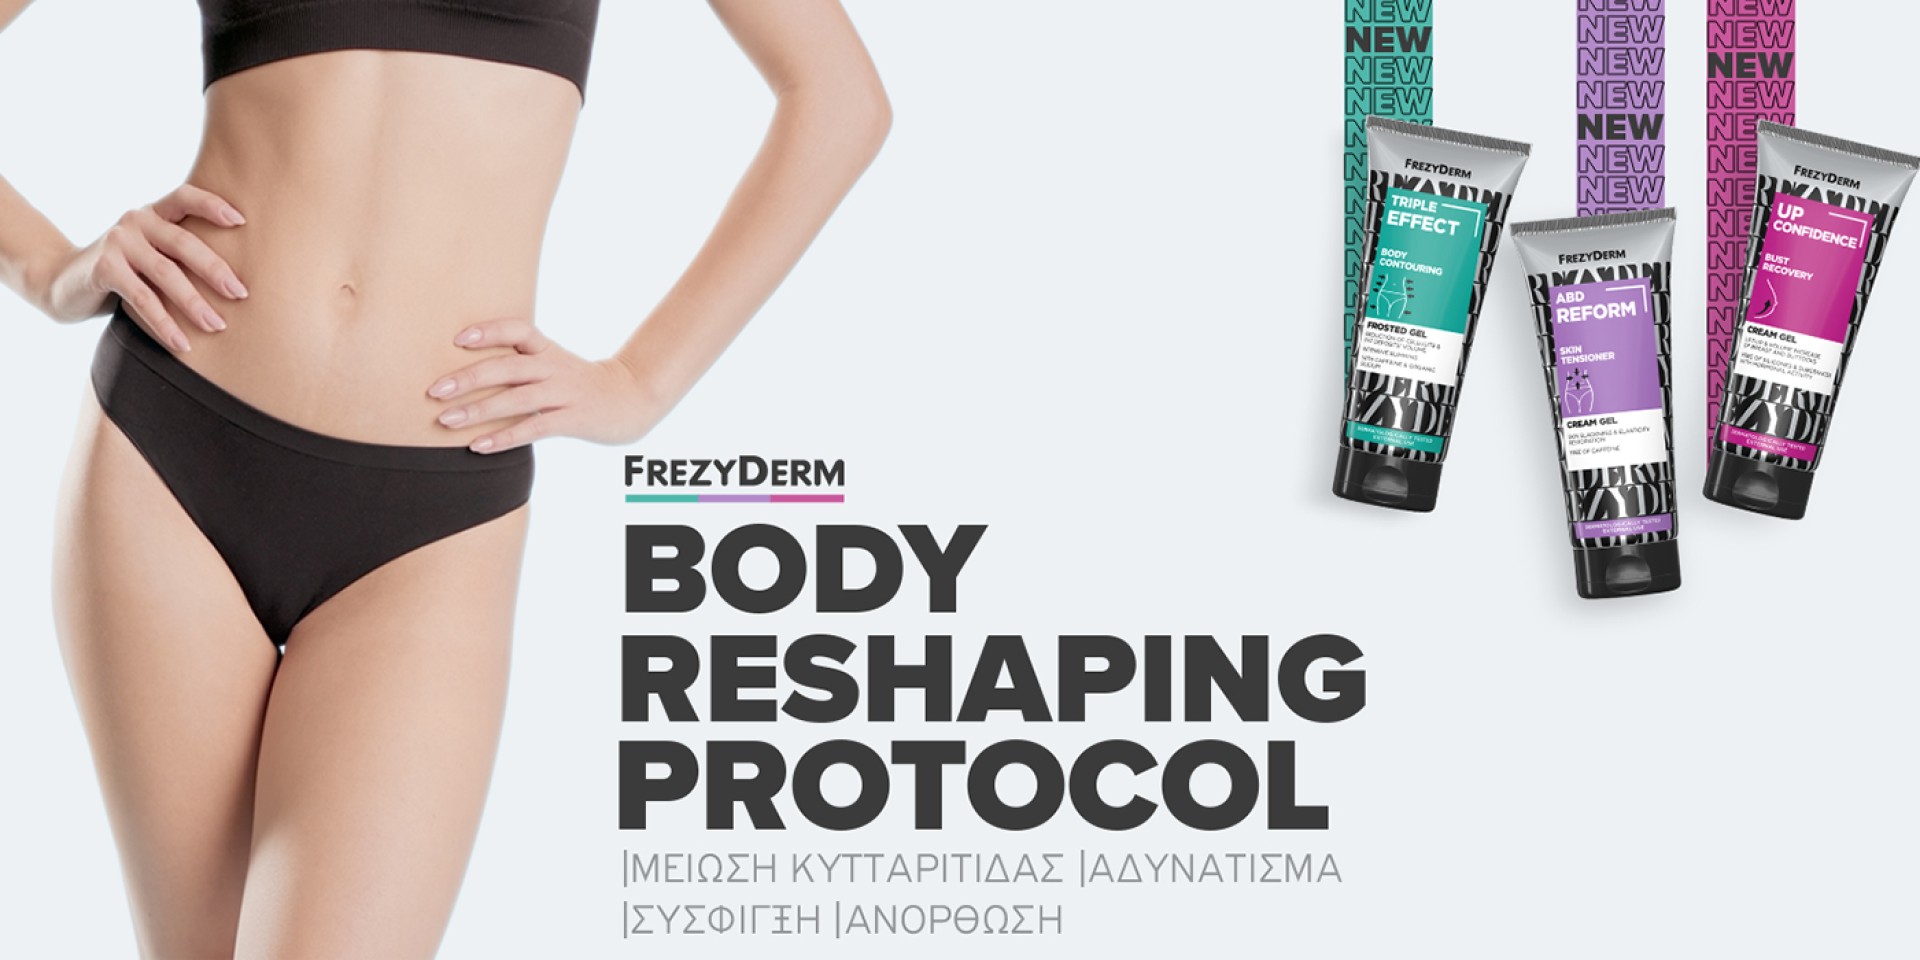 Frezyderm κρέμες σώματος, για μείωση κυτταρίτιδας, σύσφιξη σώματος & ανόρθωση!